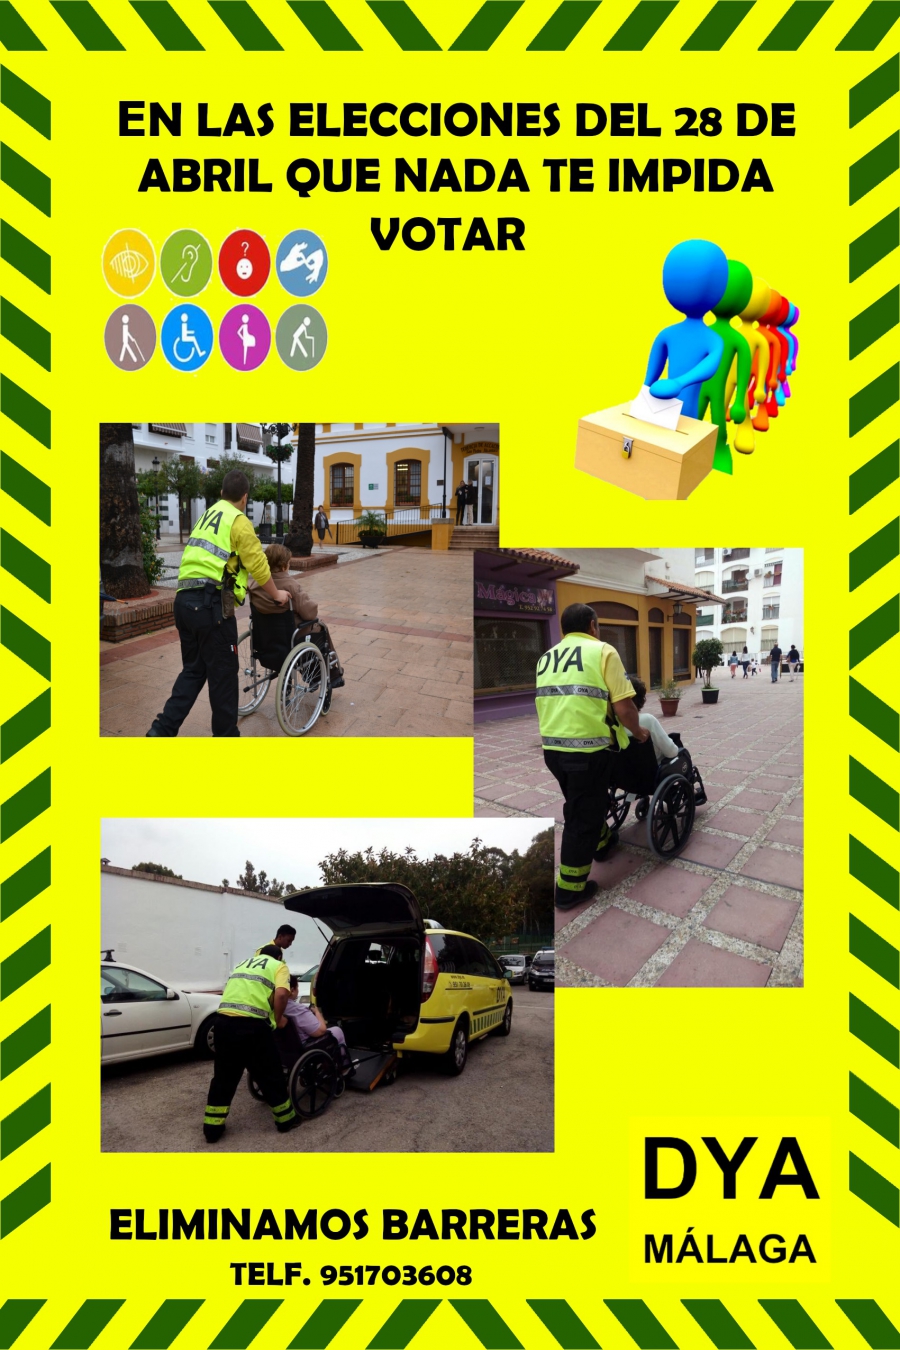 El Ayuntamiento informa de que DYA ofrecerá transporte adaptado a personas con movilidad reducida que deseen ejercer su derecho al voto en las elecciones generales del 28 de abril